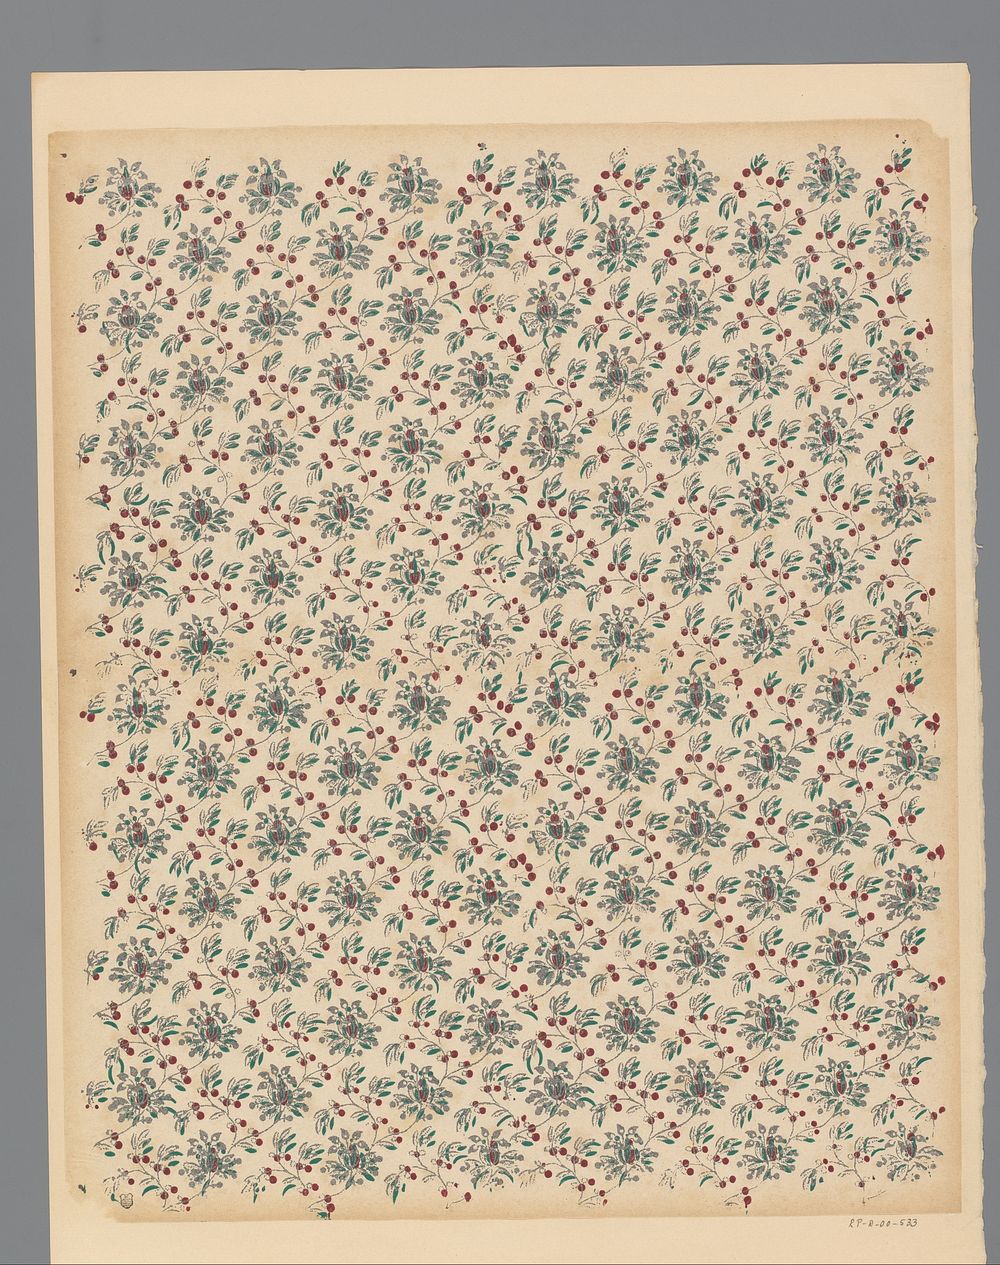 Blad met strooipatroon van ranken met bloemen, bladeren en vruchten (1800 - 1900) by anonymous